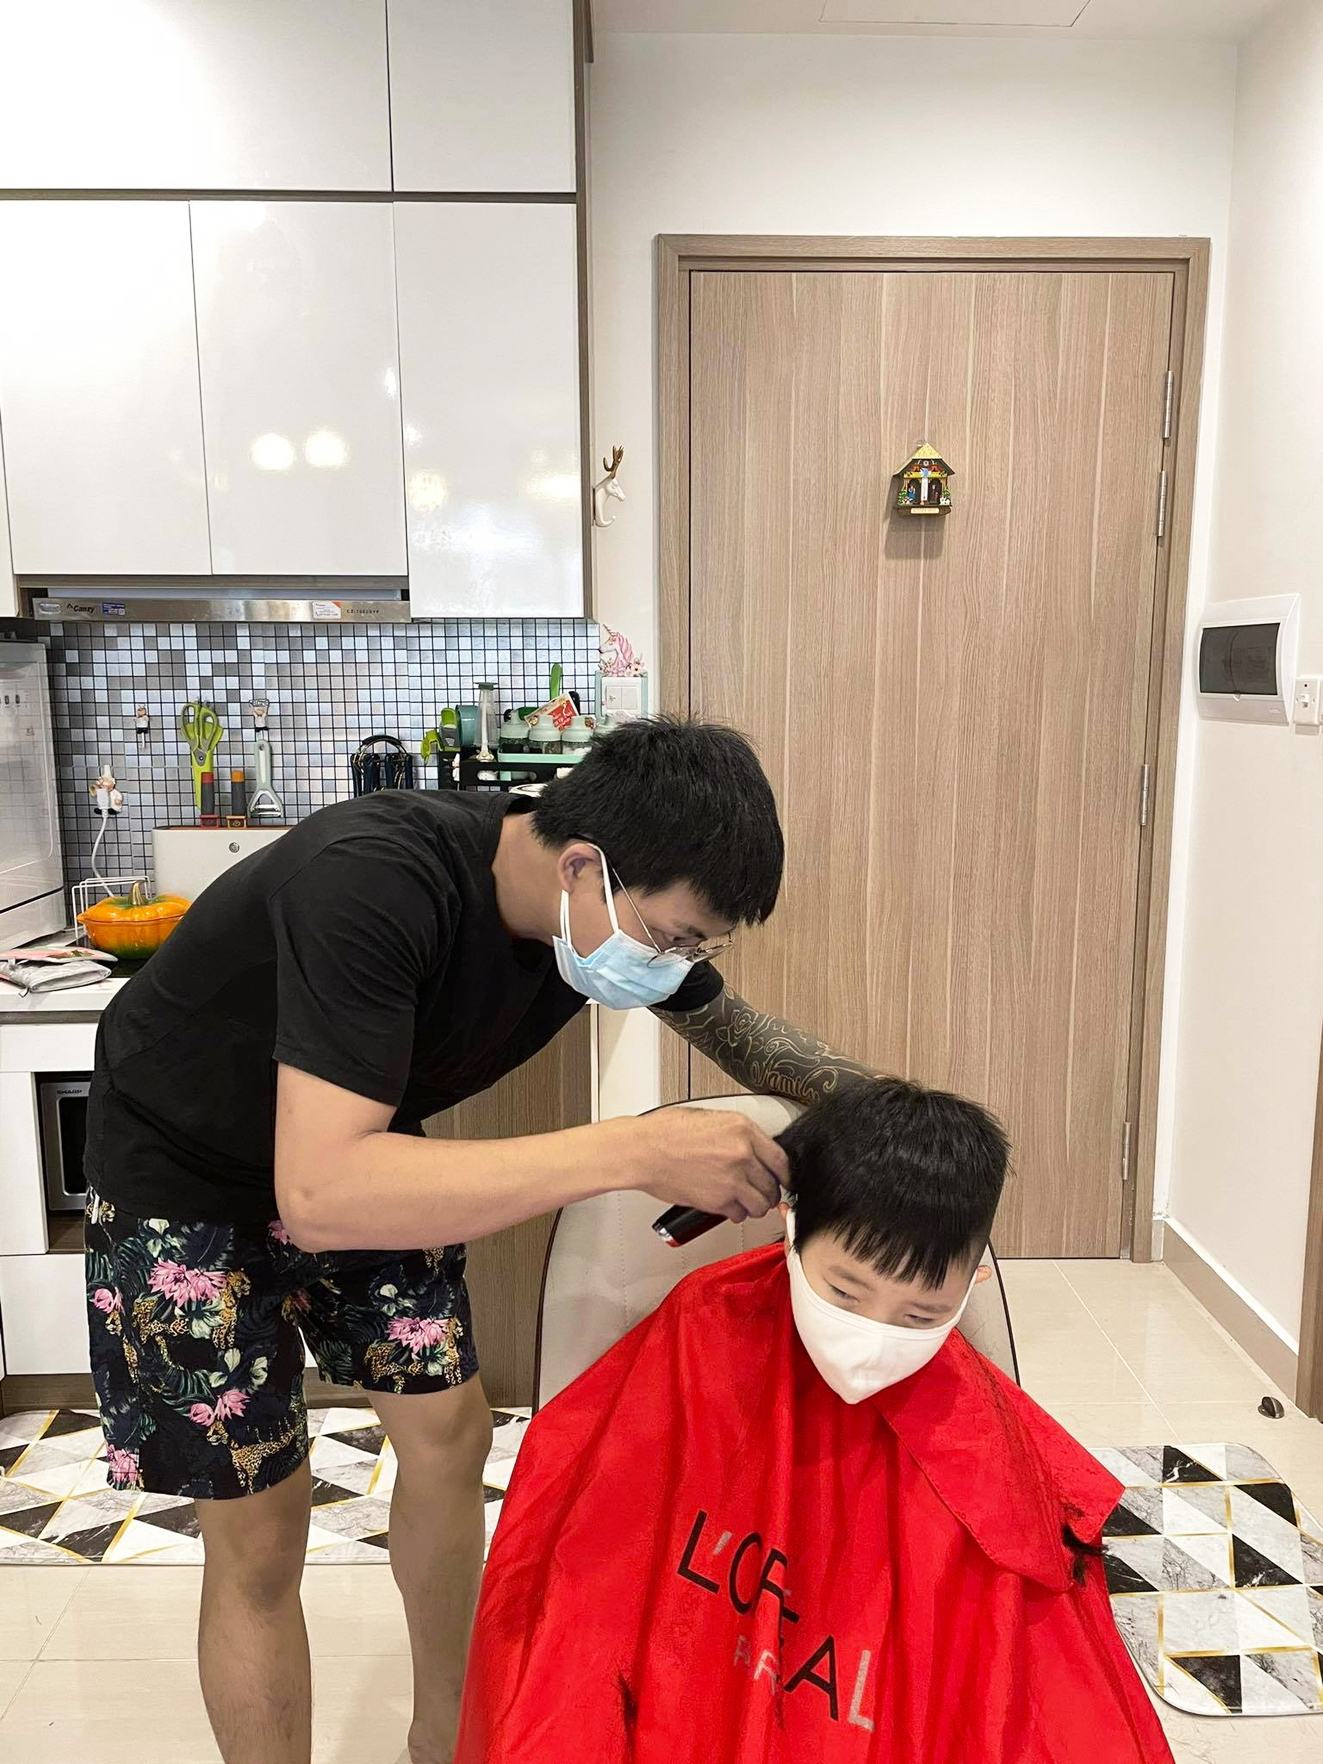 Dịch vụ cắt tóc, làm đẹp tại gia nở rộ trong mùa dịch COVID-19